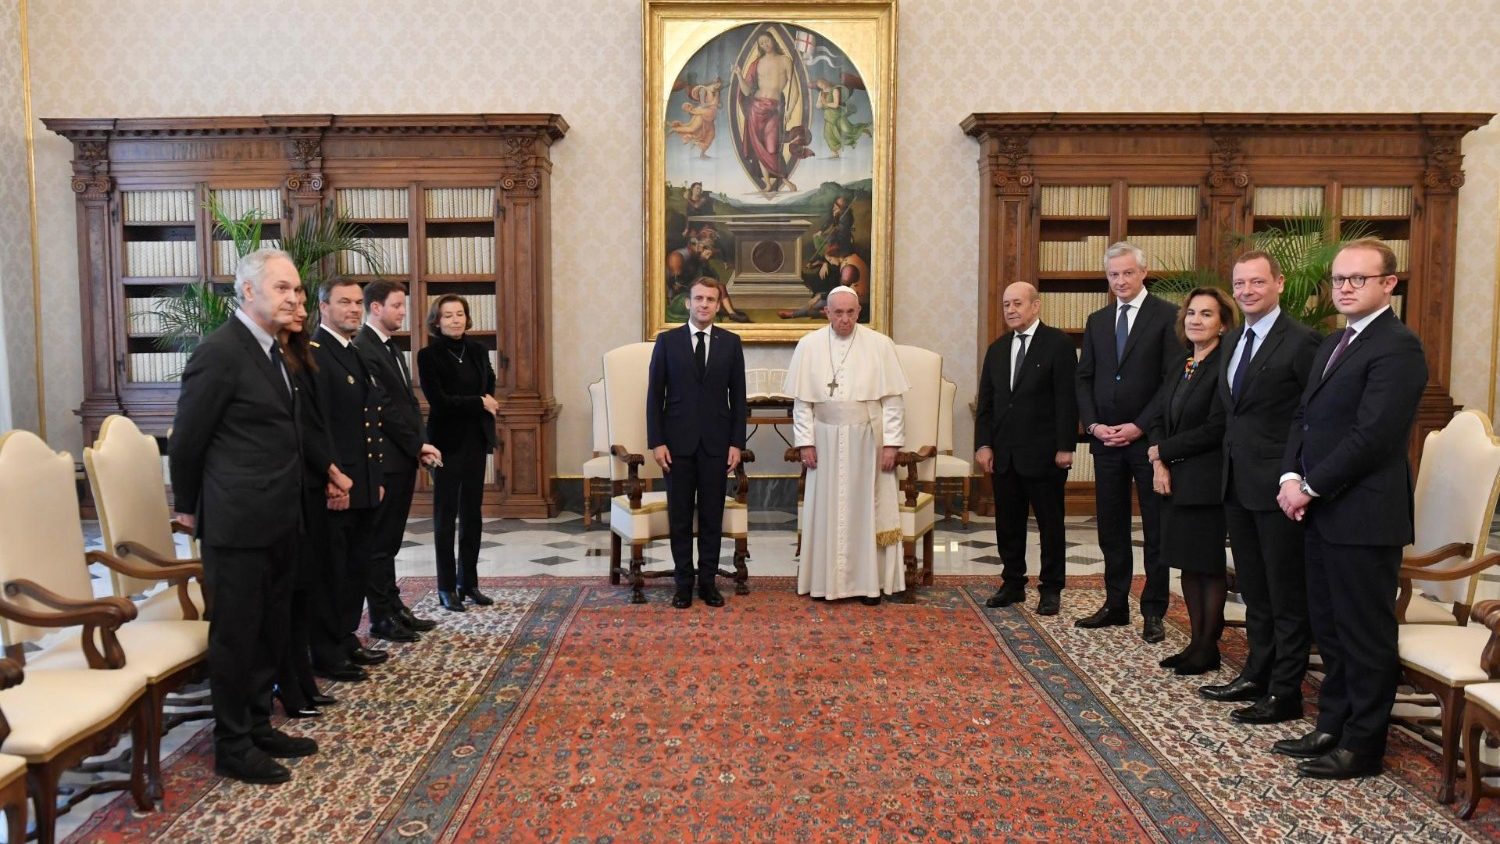 Папа встретился с президентом Франции